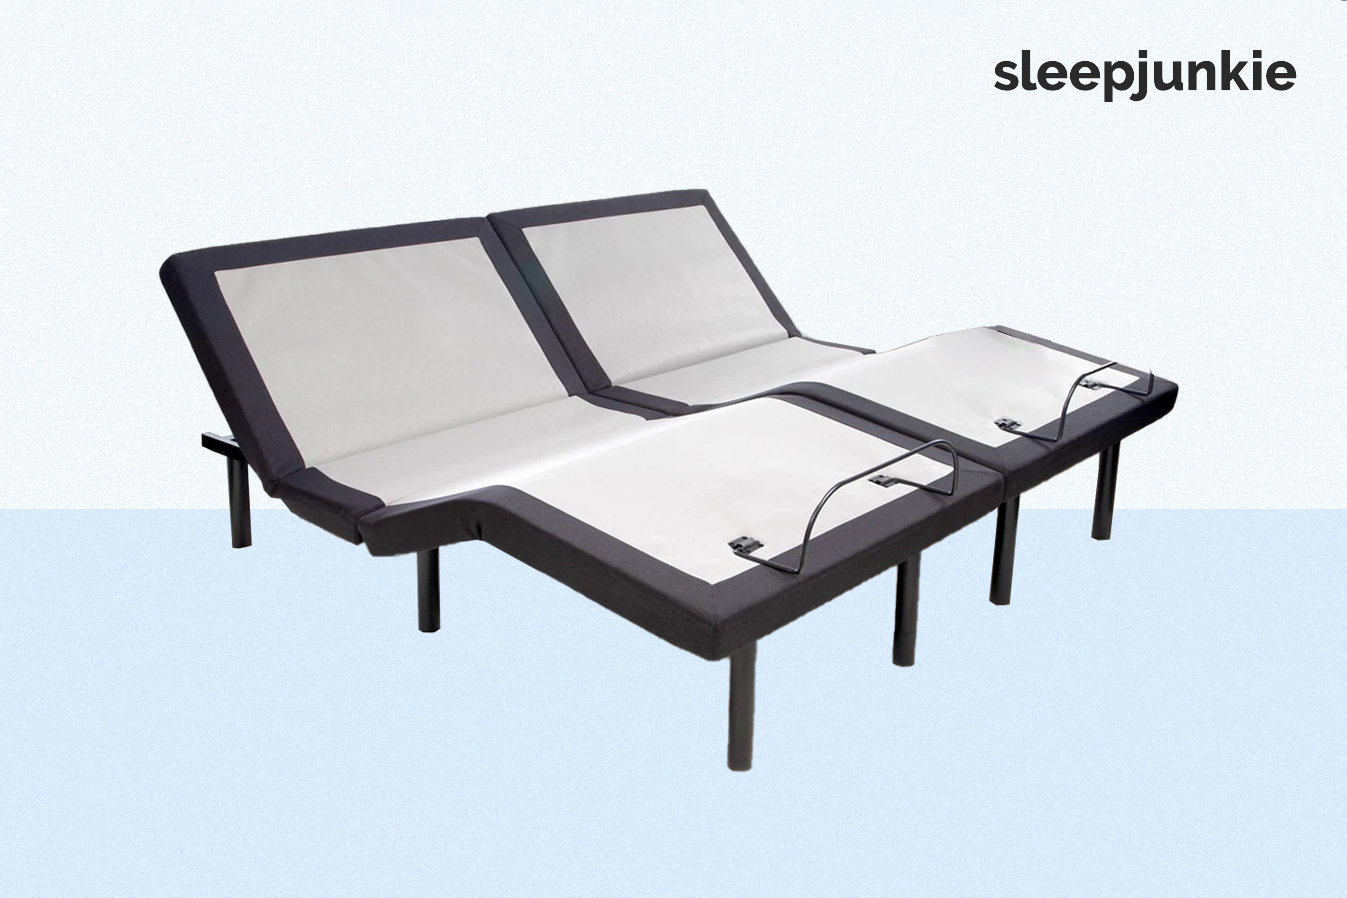 GhostBed Split King Adjustable Bed Set